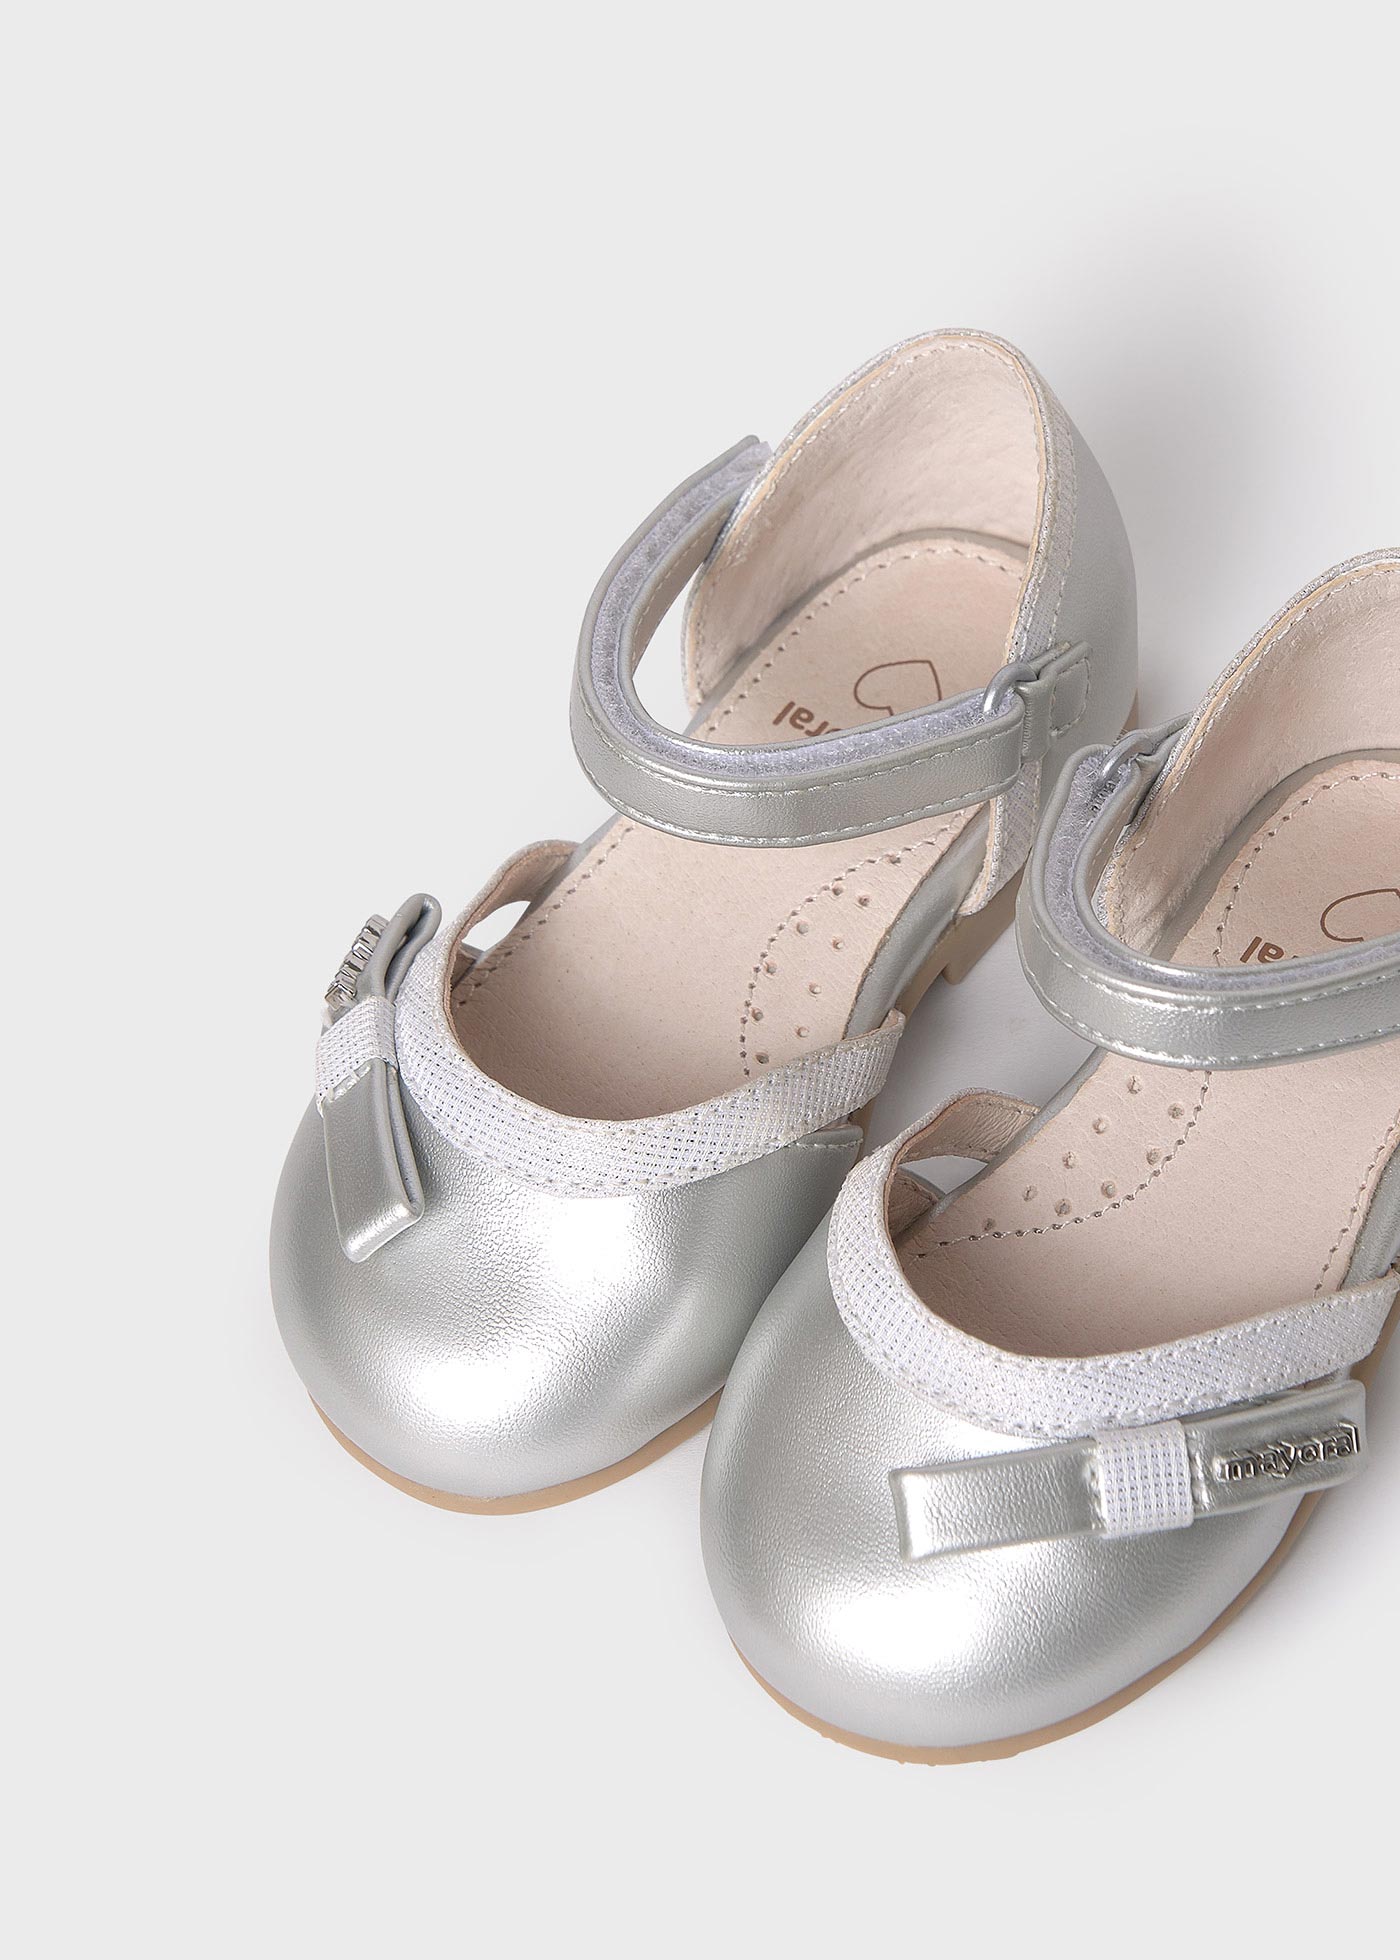 Ballerine metallizzate aperte suola in pelle sostenibile neonata